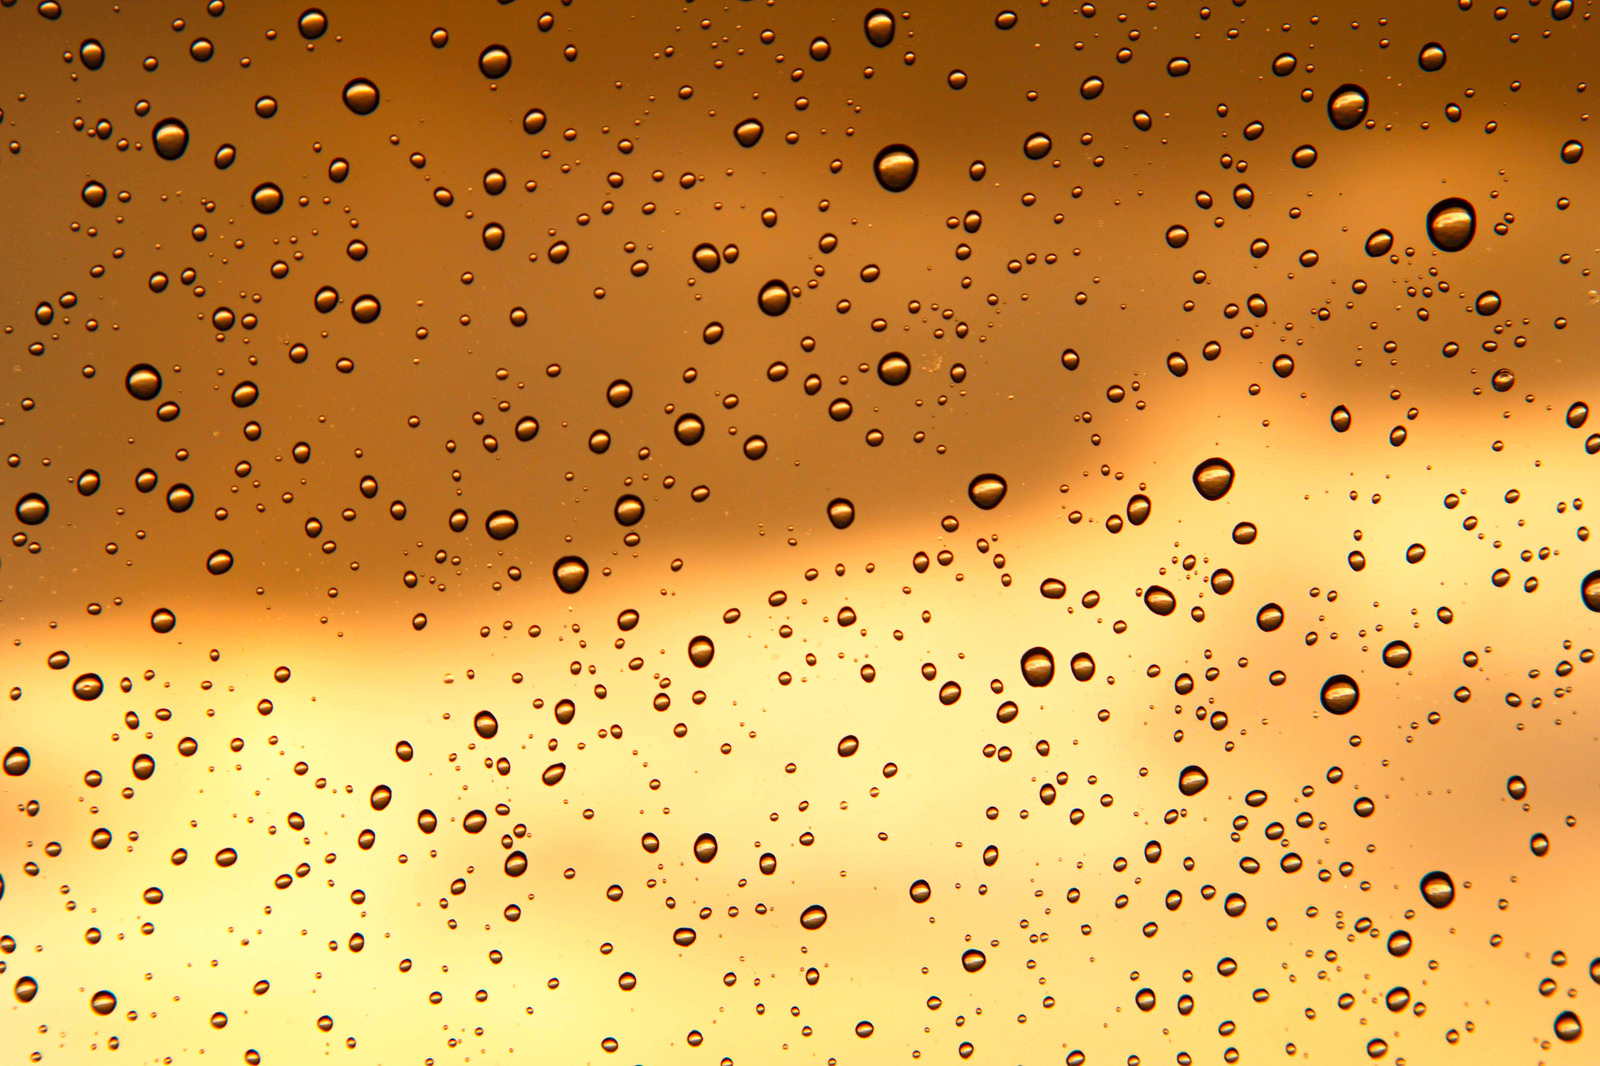 「夕焼け空と窓の水滴」の写真